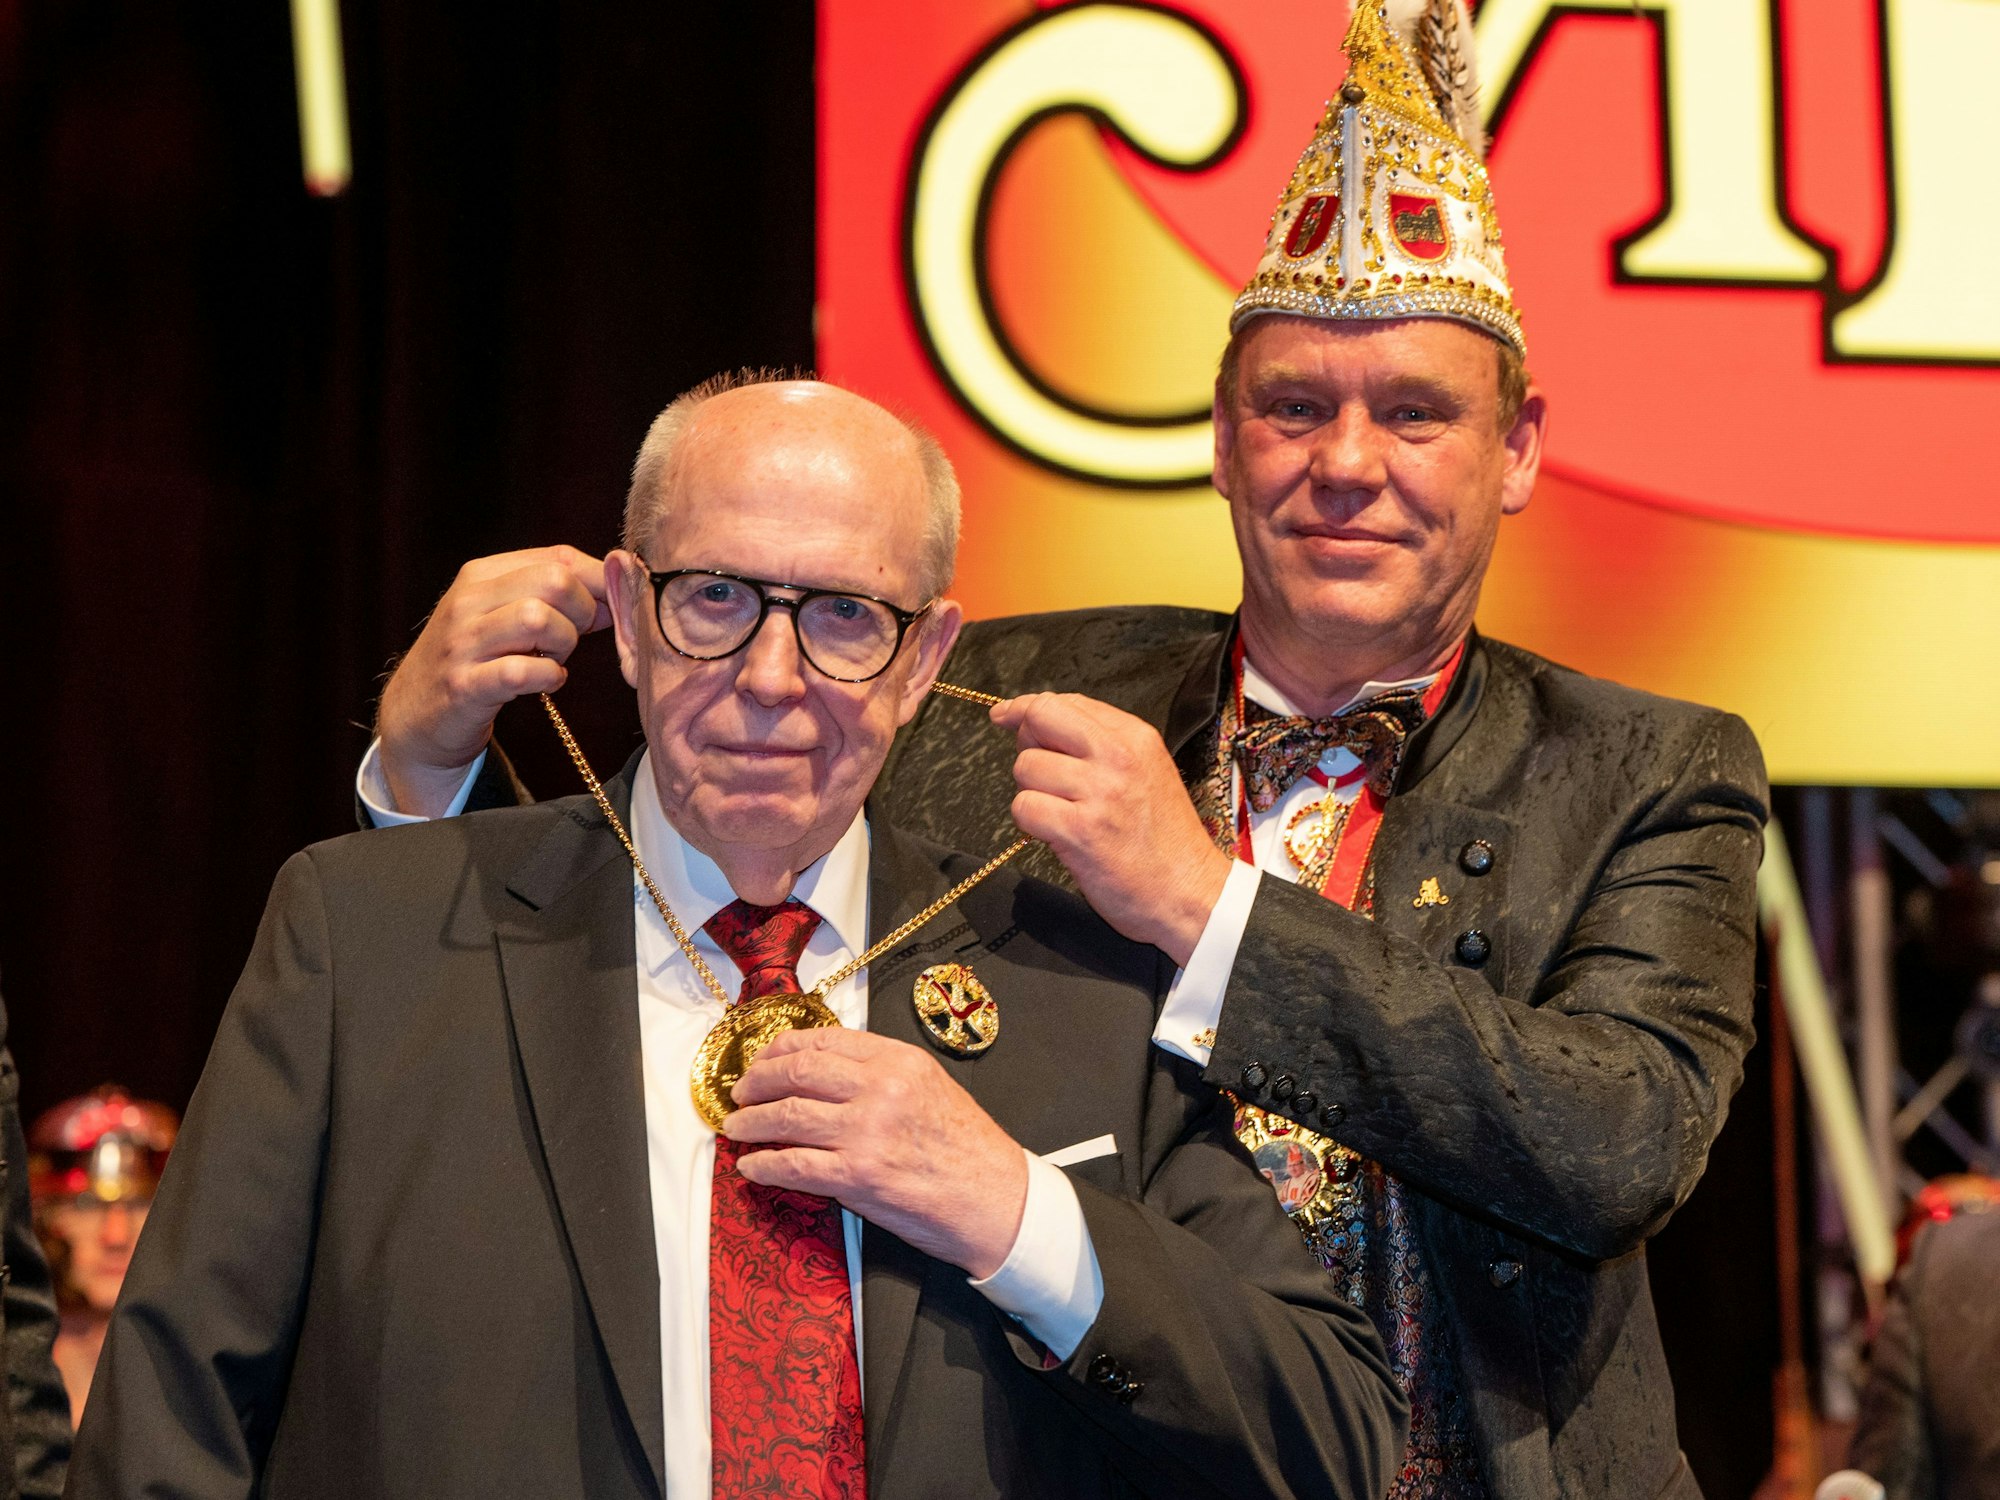 Andreas Peters (r.), Präsident der Arbeitsgemeinschaft Trierer Karneval, legt Reiner Calmund einen Orden um den Hals.